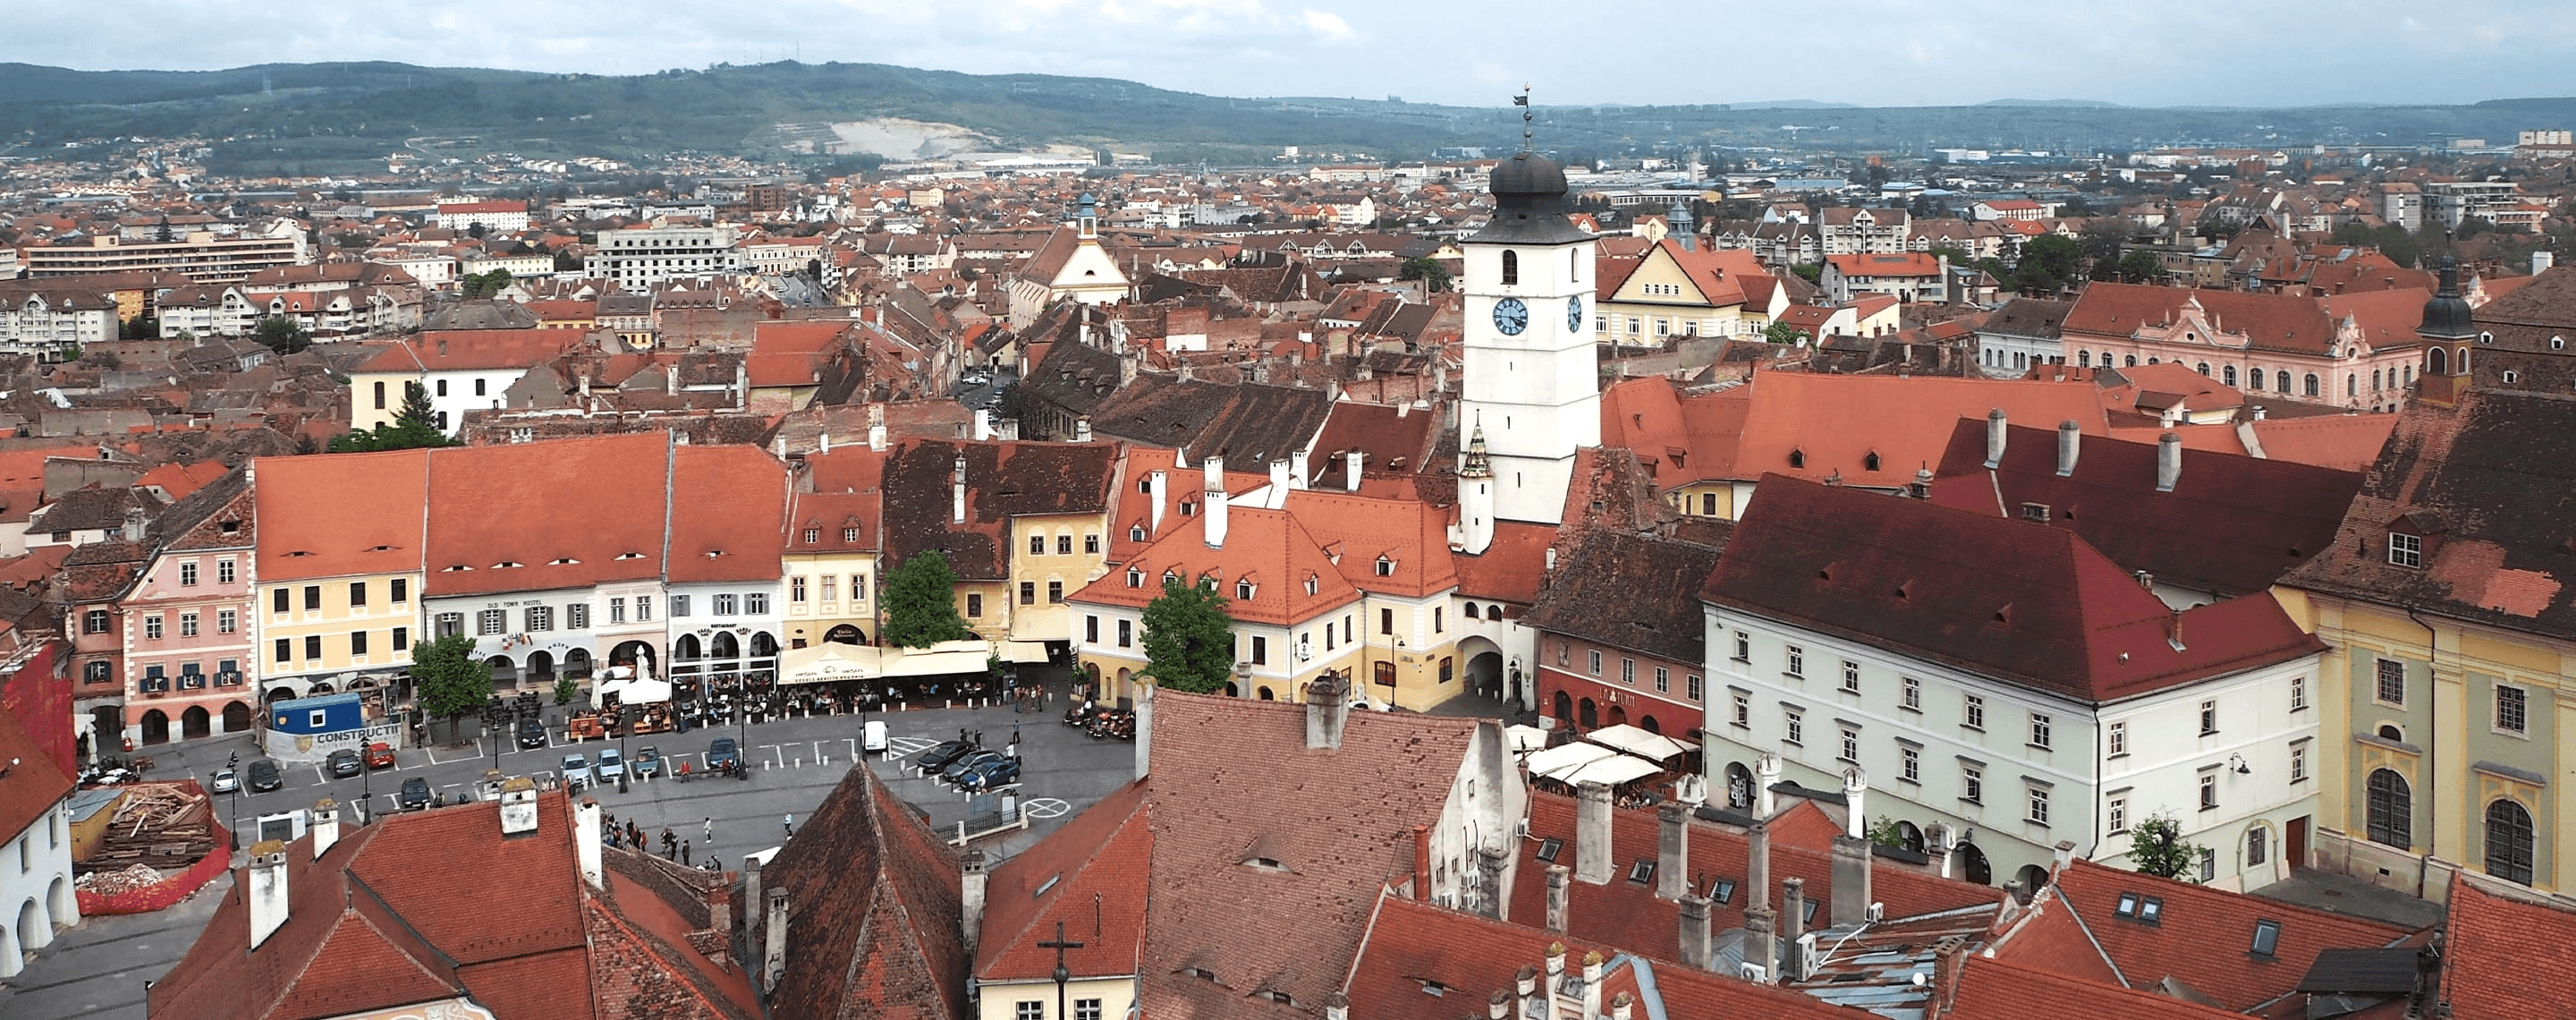 Stadtpanorama von Sibiu in Rumänien